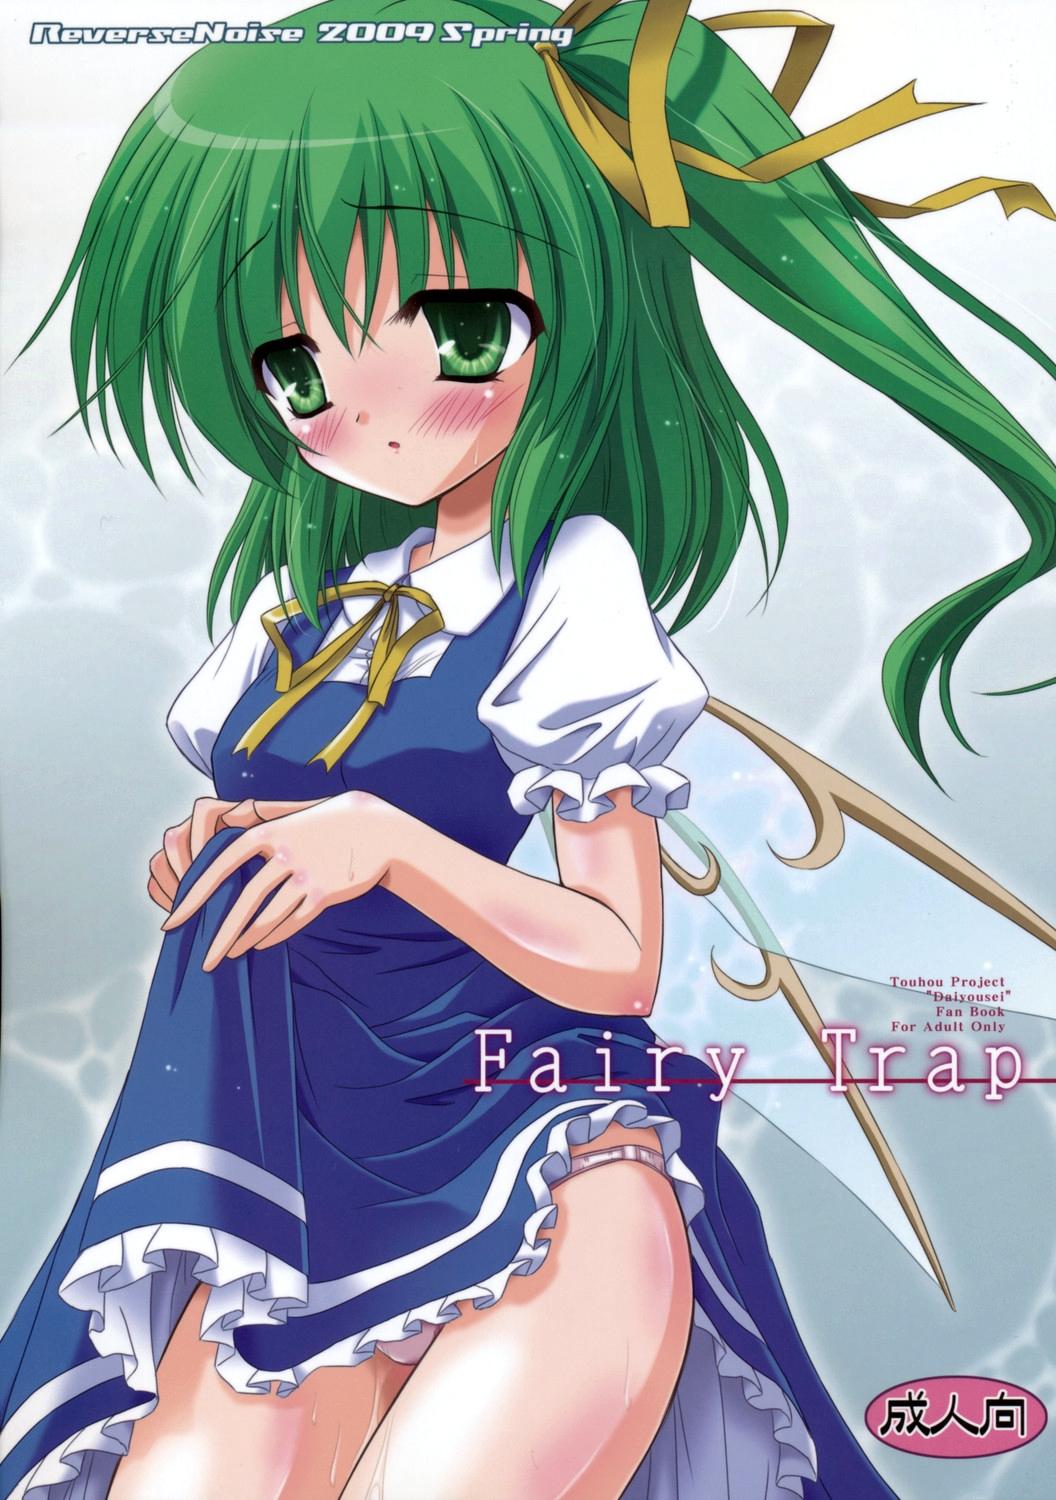 Fairy Trap 0